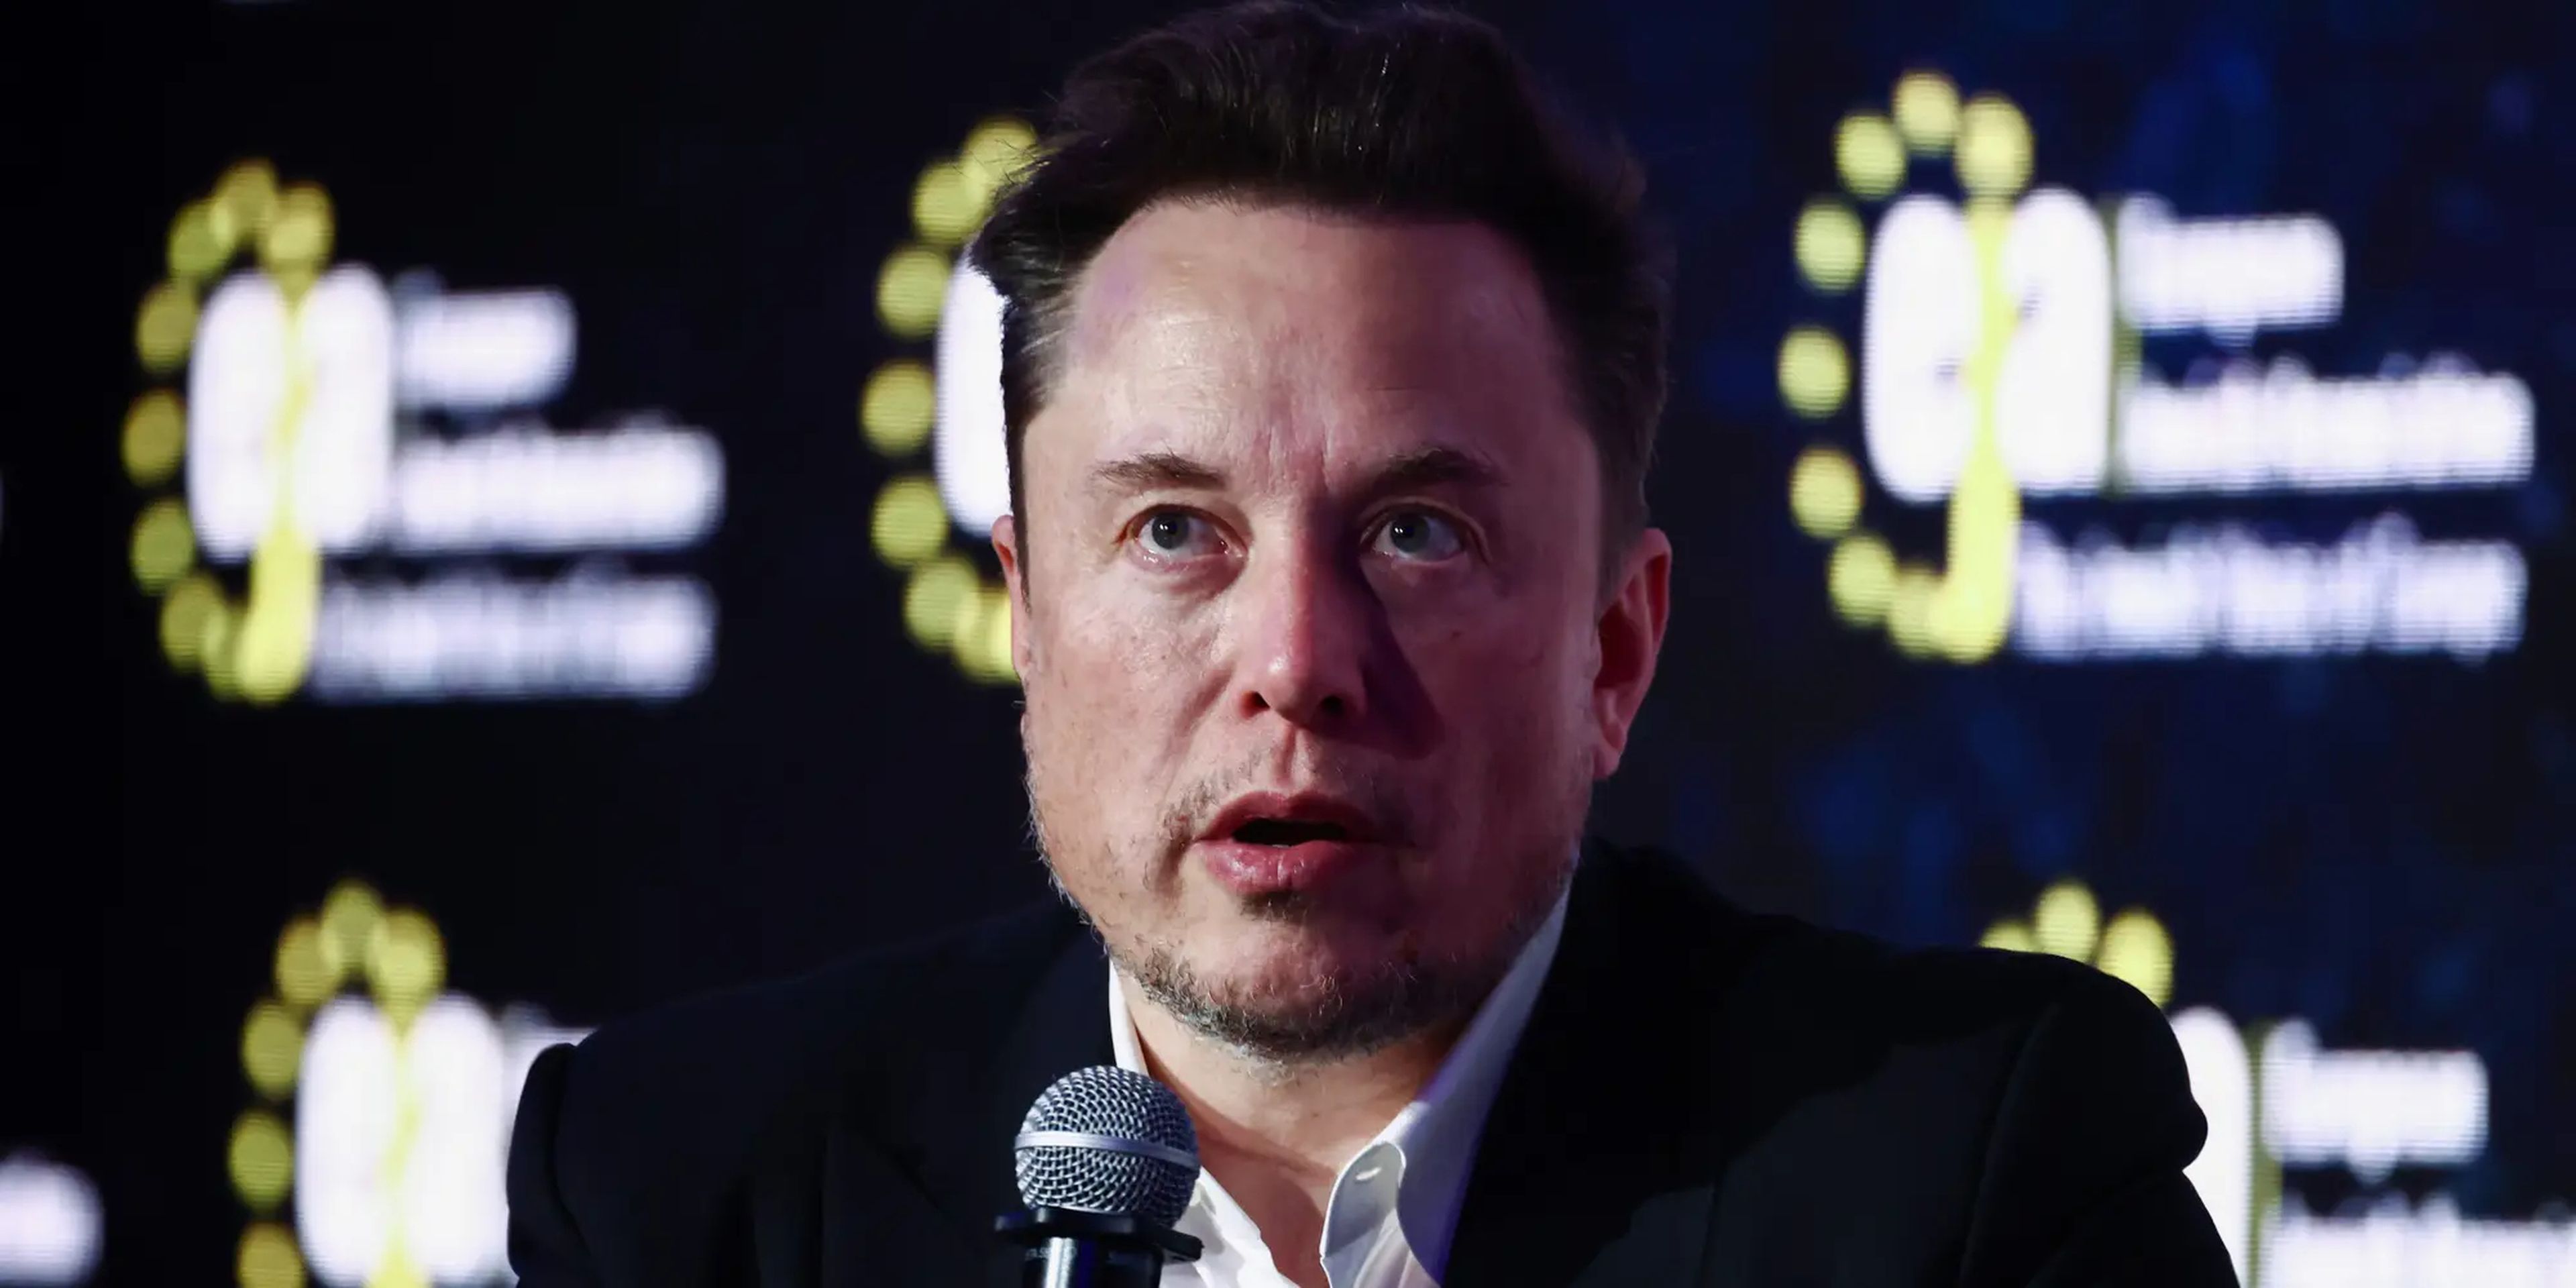 Elon Musk, CEO de Tesla. 